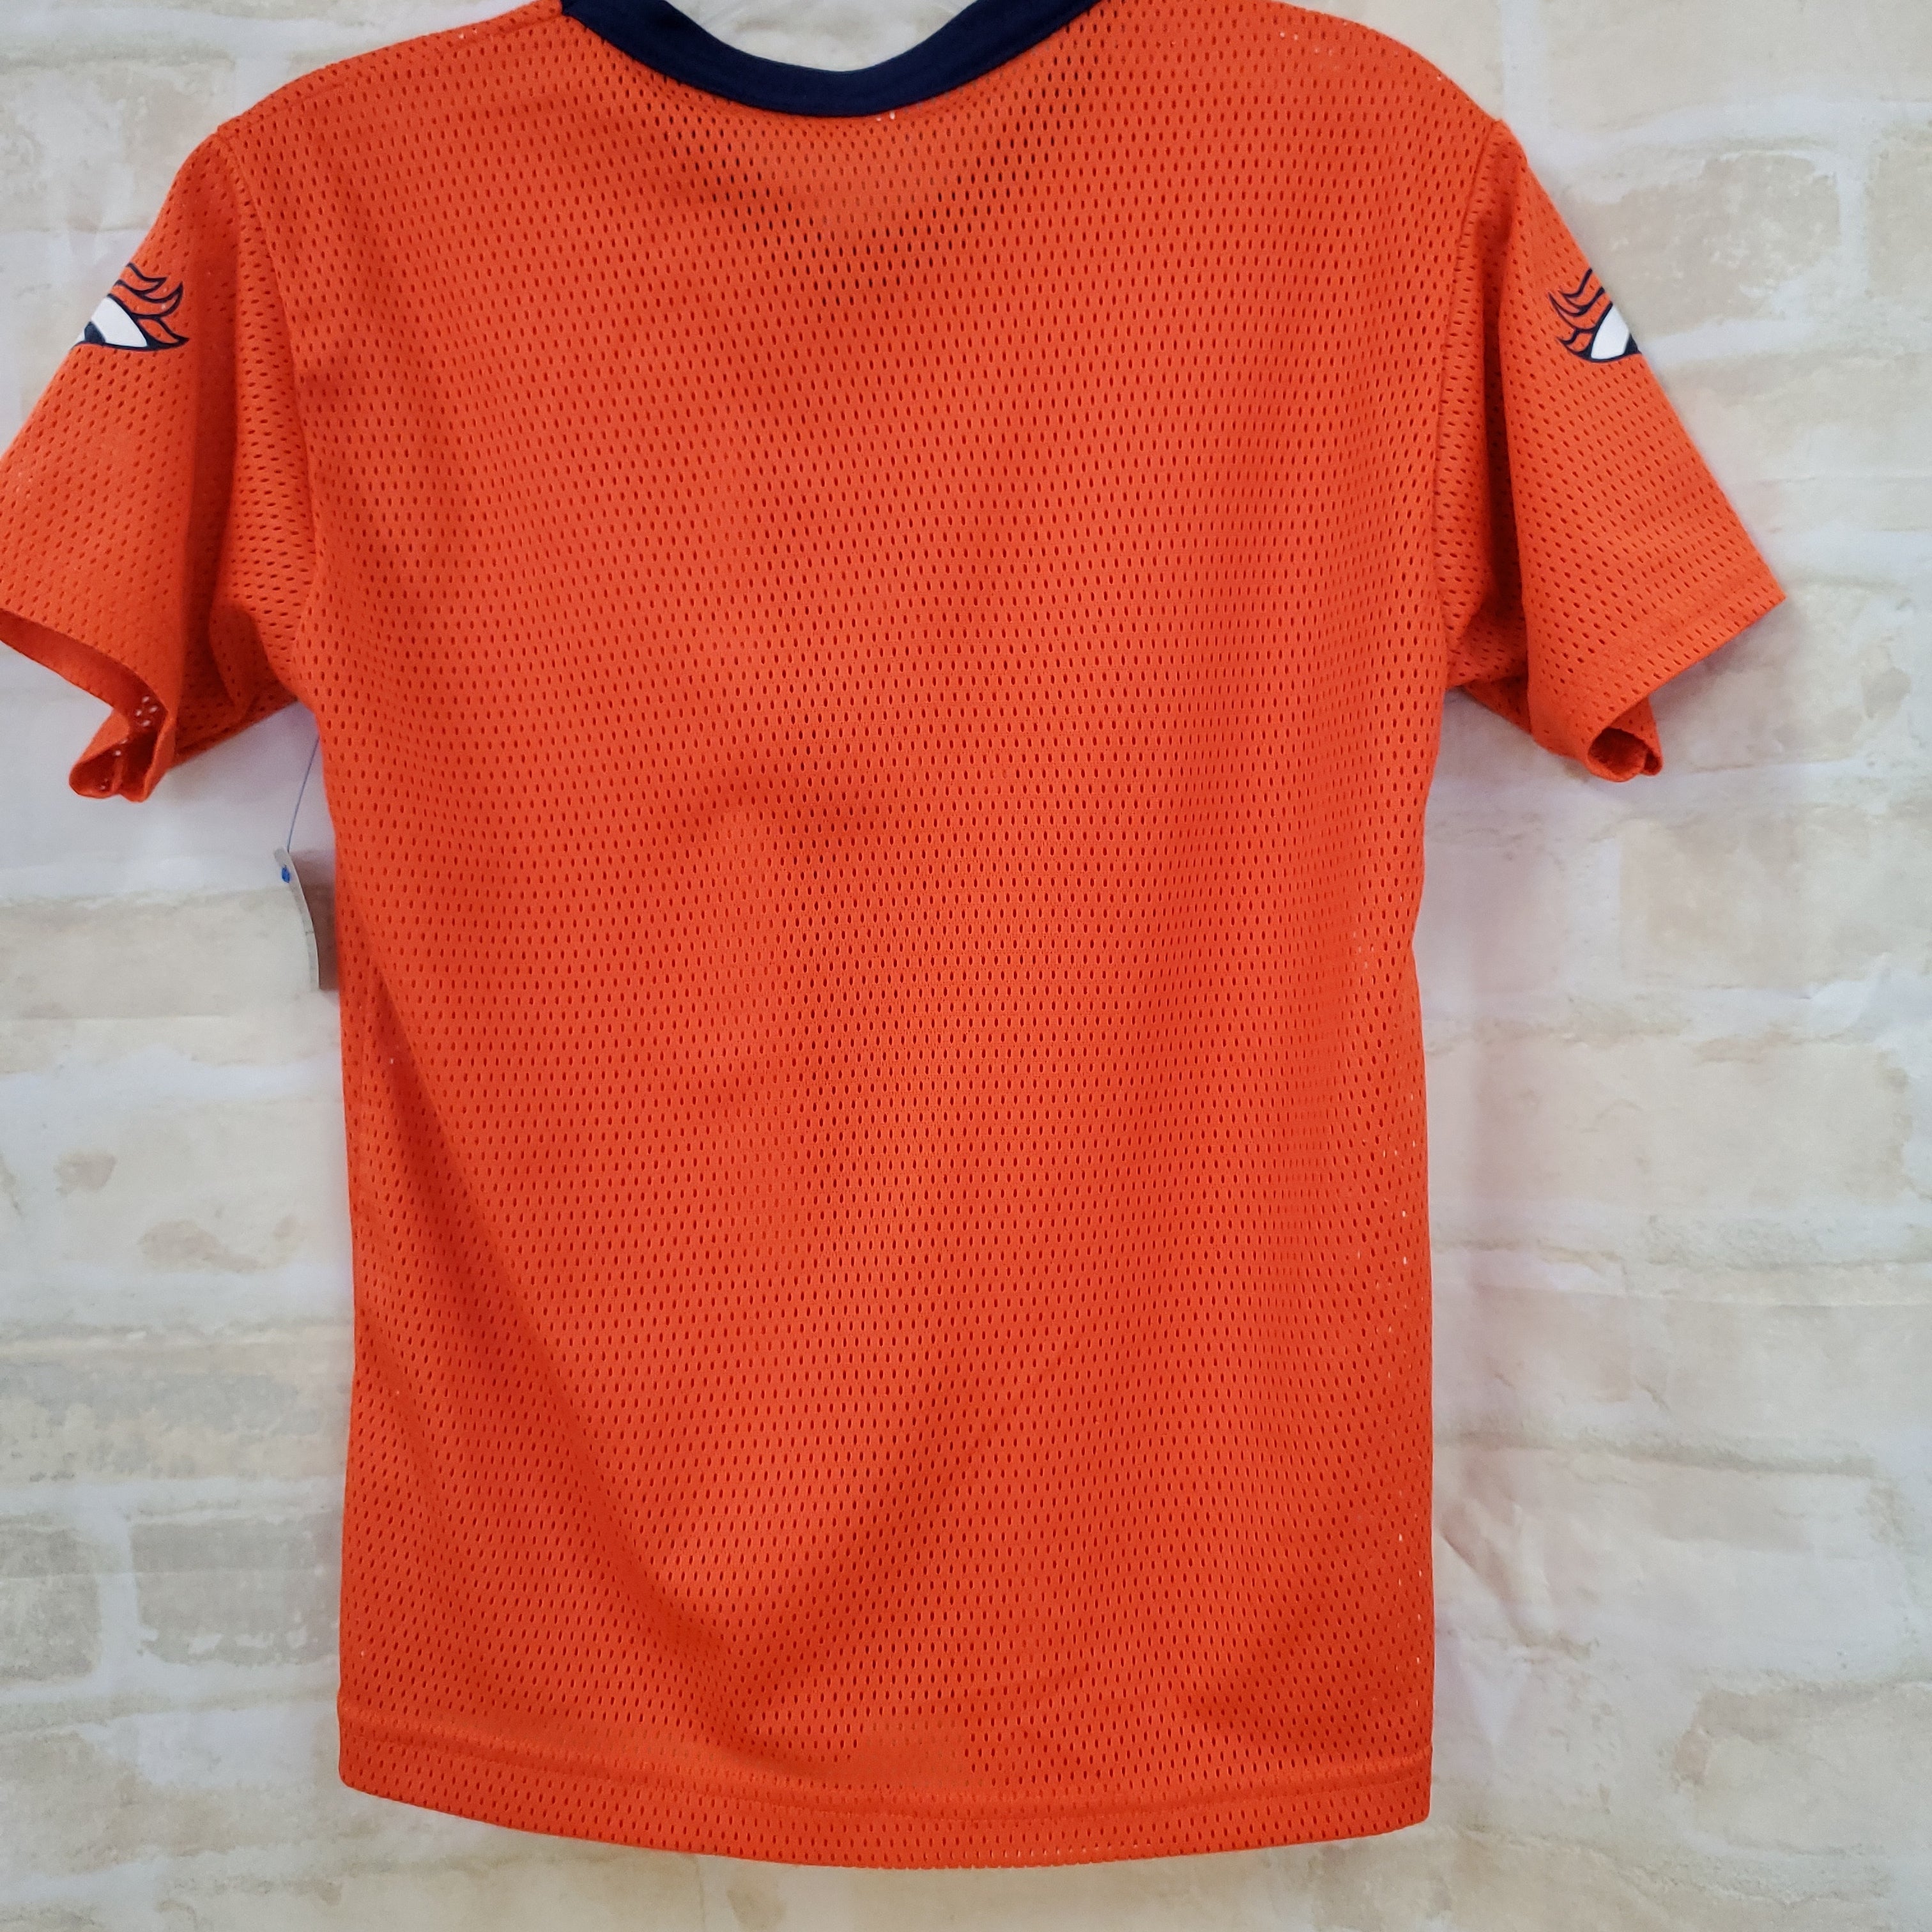 Denver Broncos jersey boys shirt orange S/L 10-12